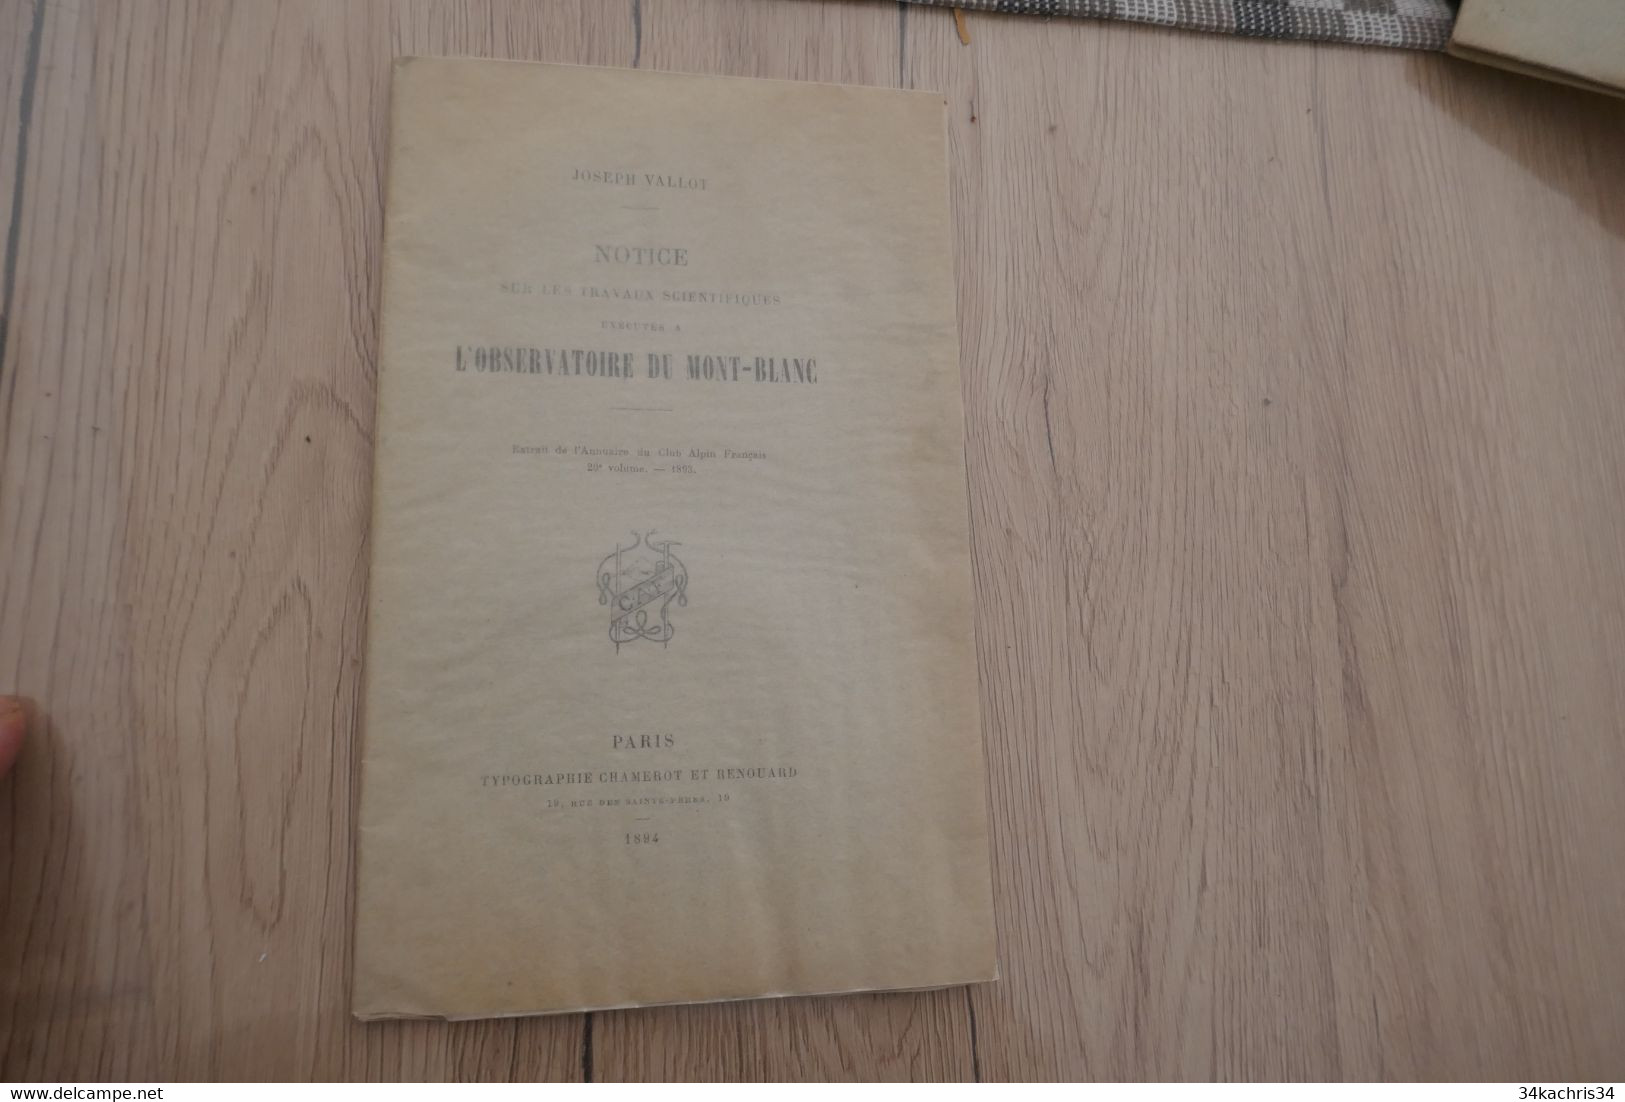 J.Vallot Notice Sur Les Travaux Scientifiques Exécutés à L'Observatoire Du  Mont Blanc 1894 16p - Rhône-Alpes